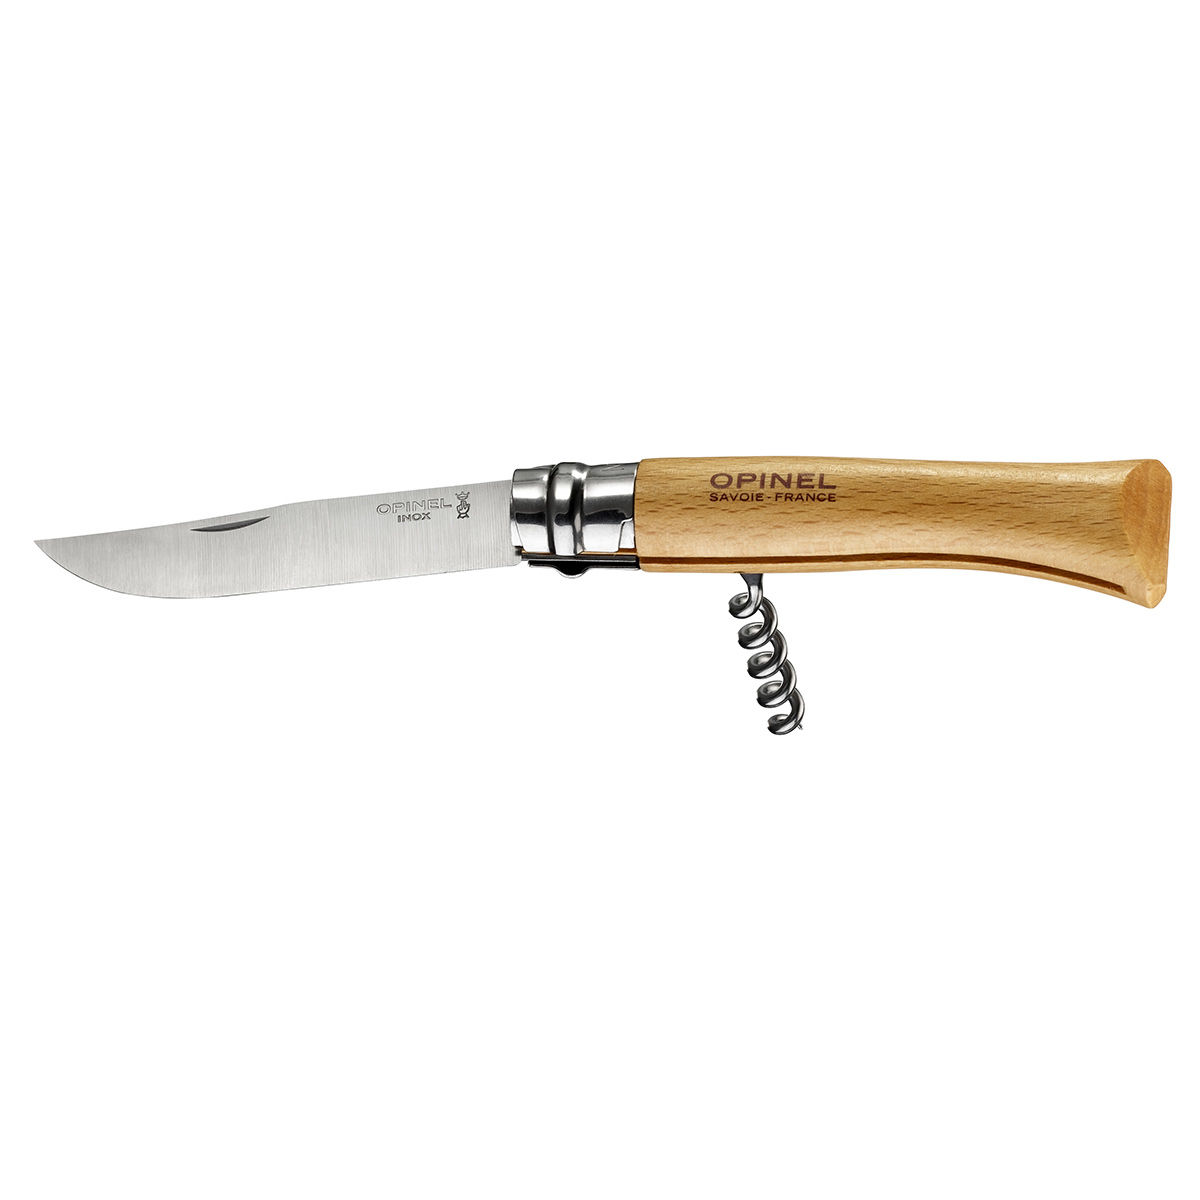 Couteau Opinel n°10 avec tire-bouchon - Tradition 10 cm - Inox, hêtre